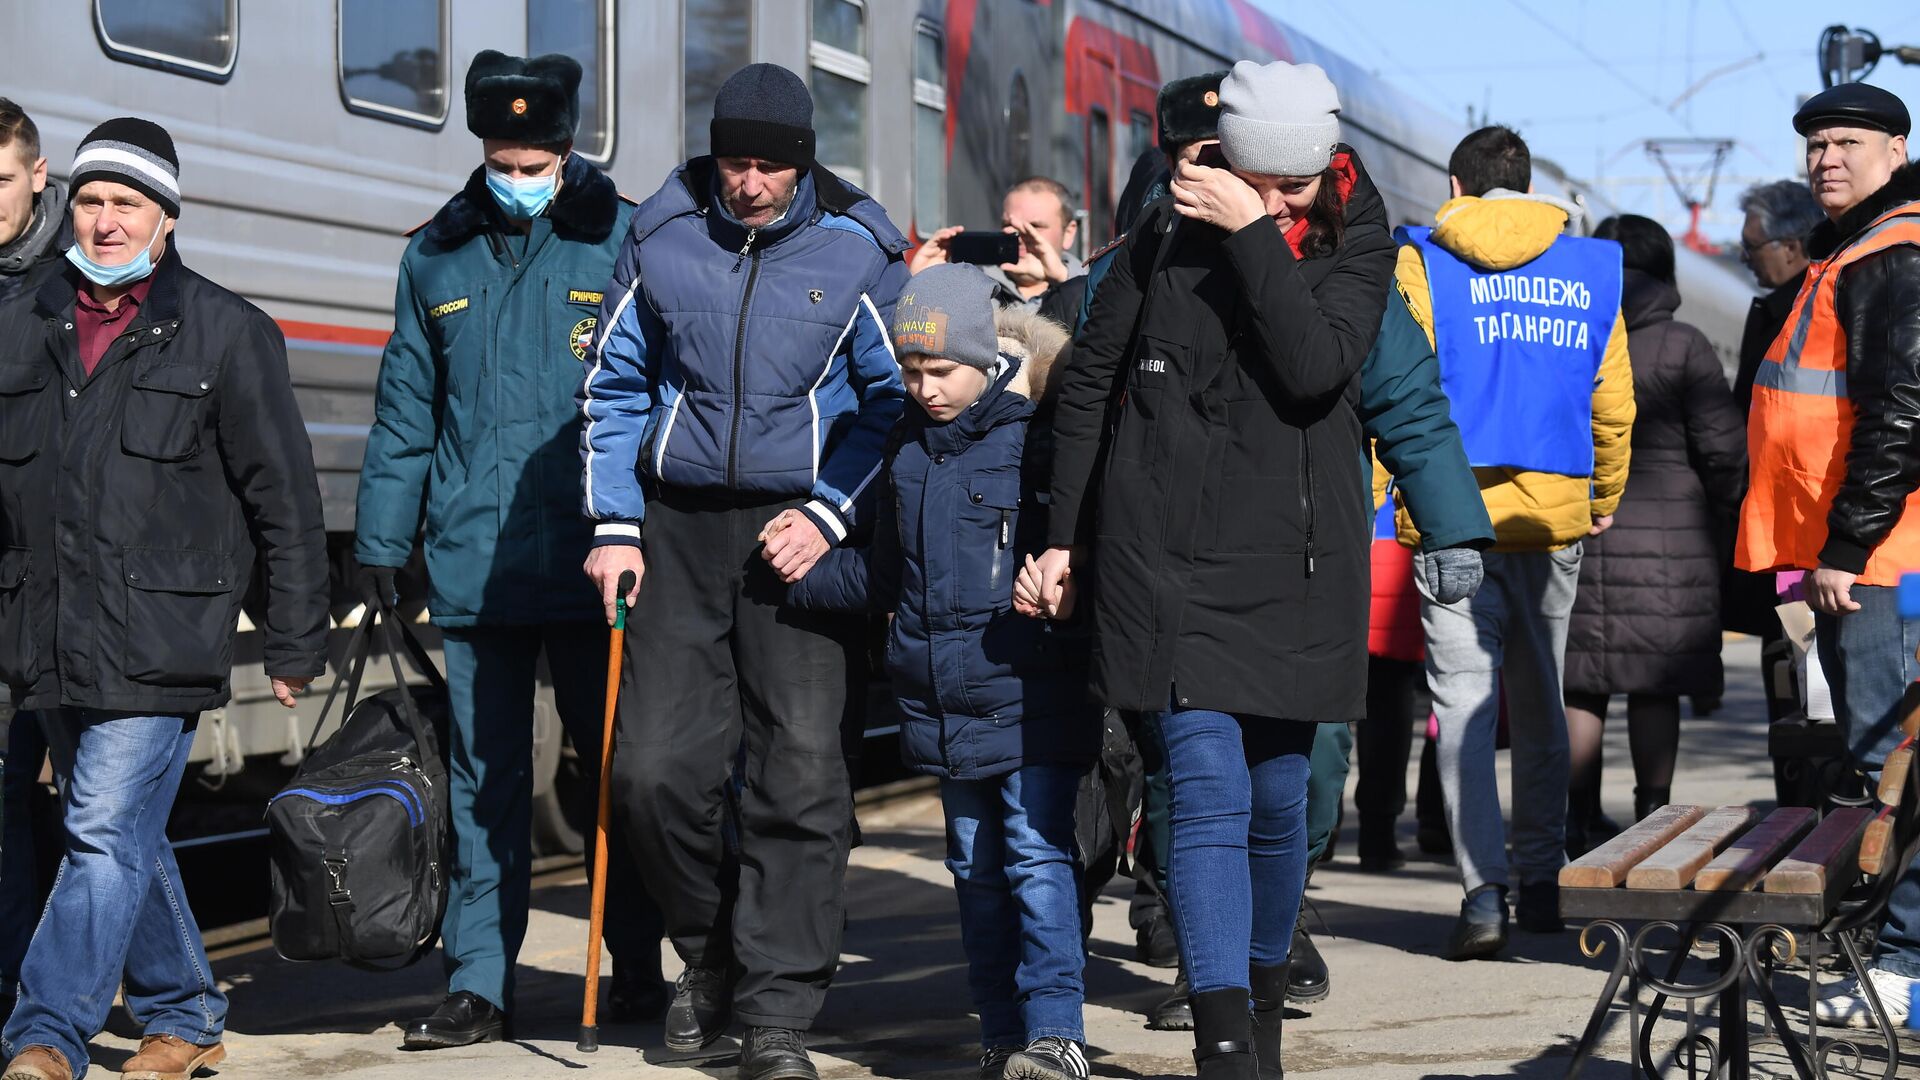 Беженцы из Донбасса во время посадки на поезд, следующий в Белгород, на железнодорожном вокзале в Таганроге - РИА Новости, 1920, 26.02.2022